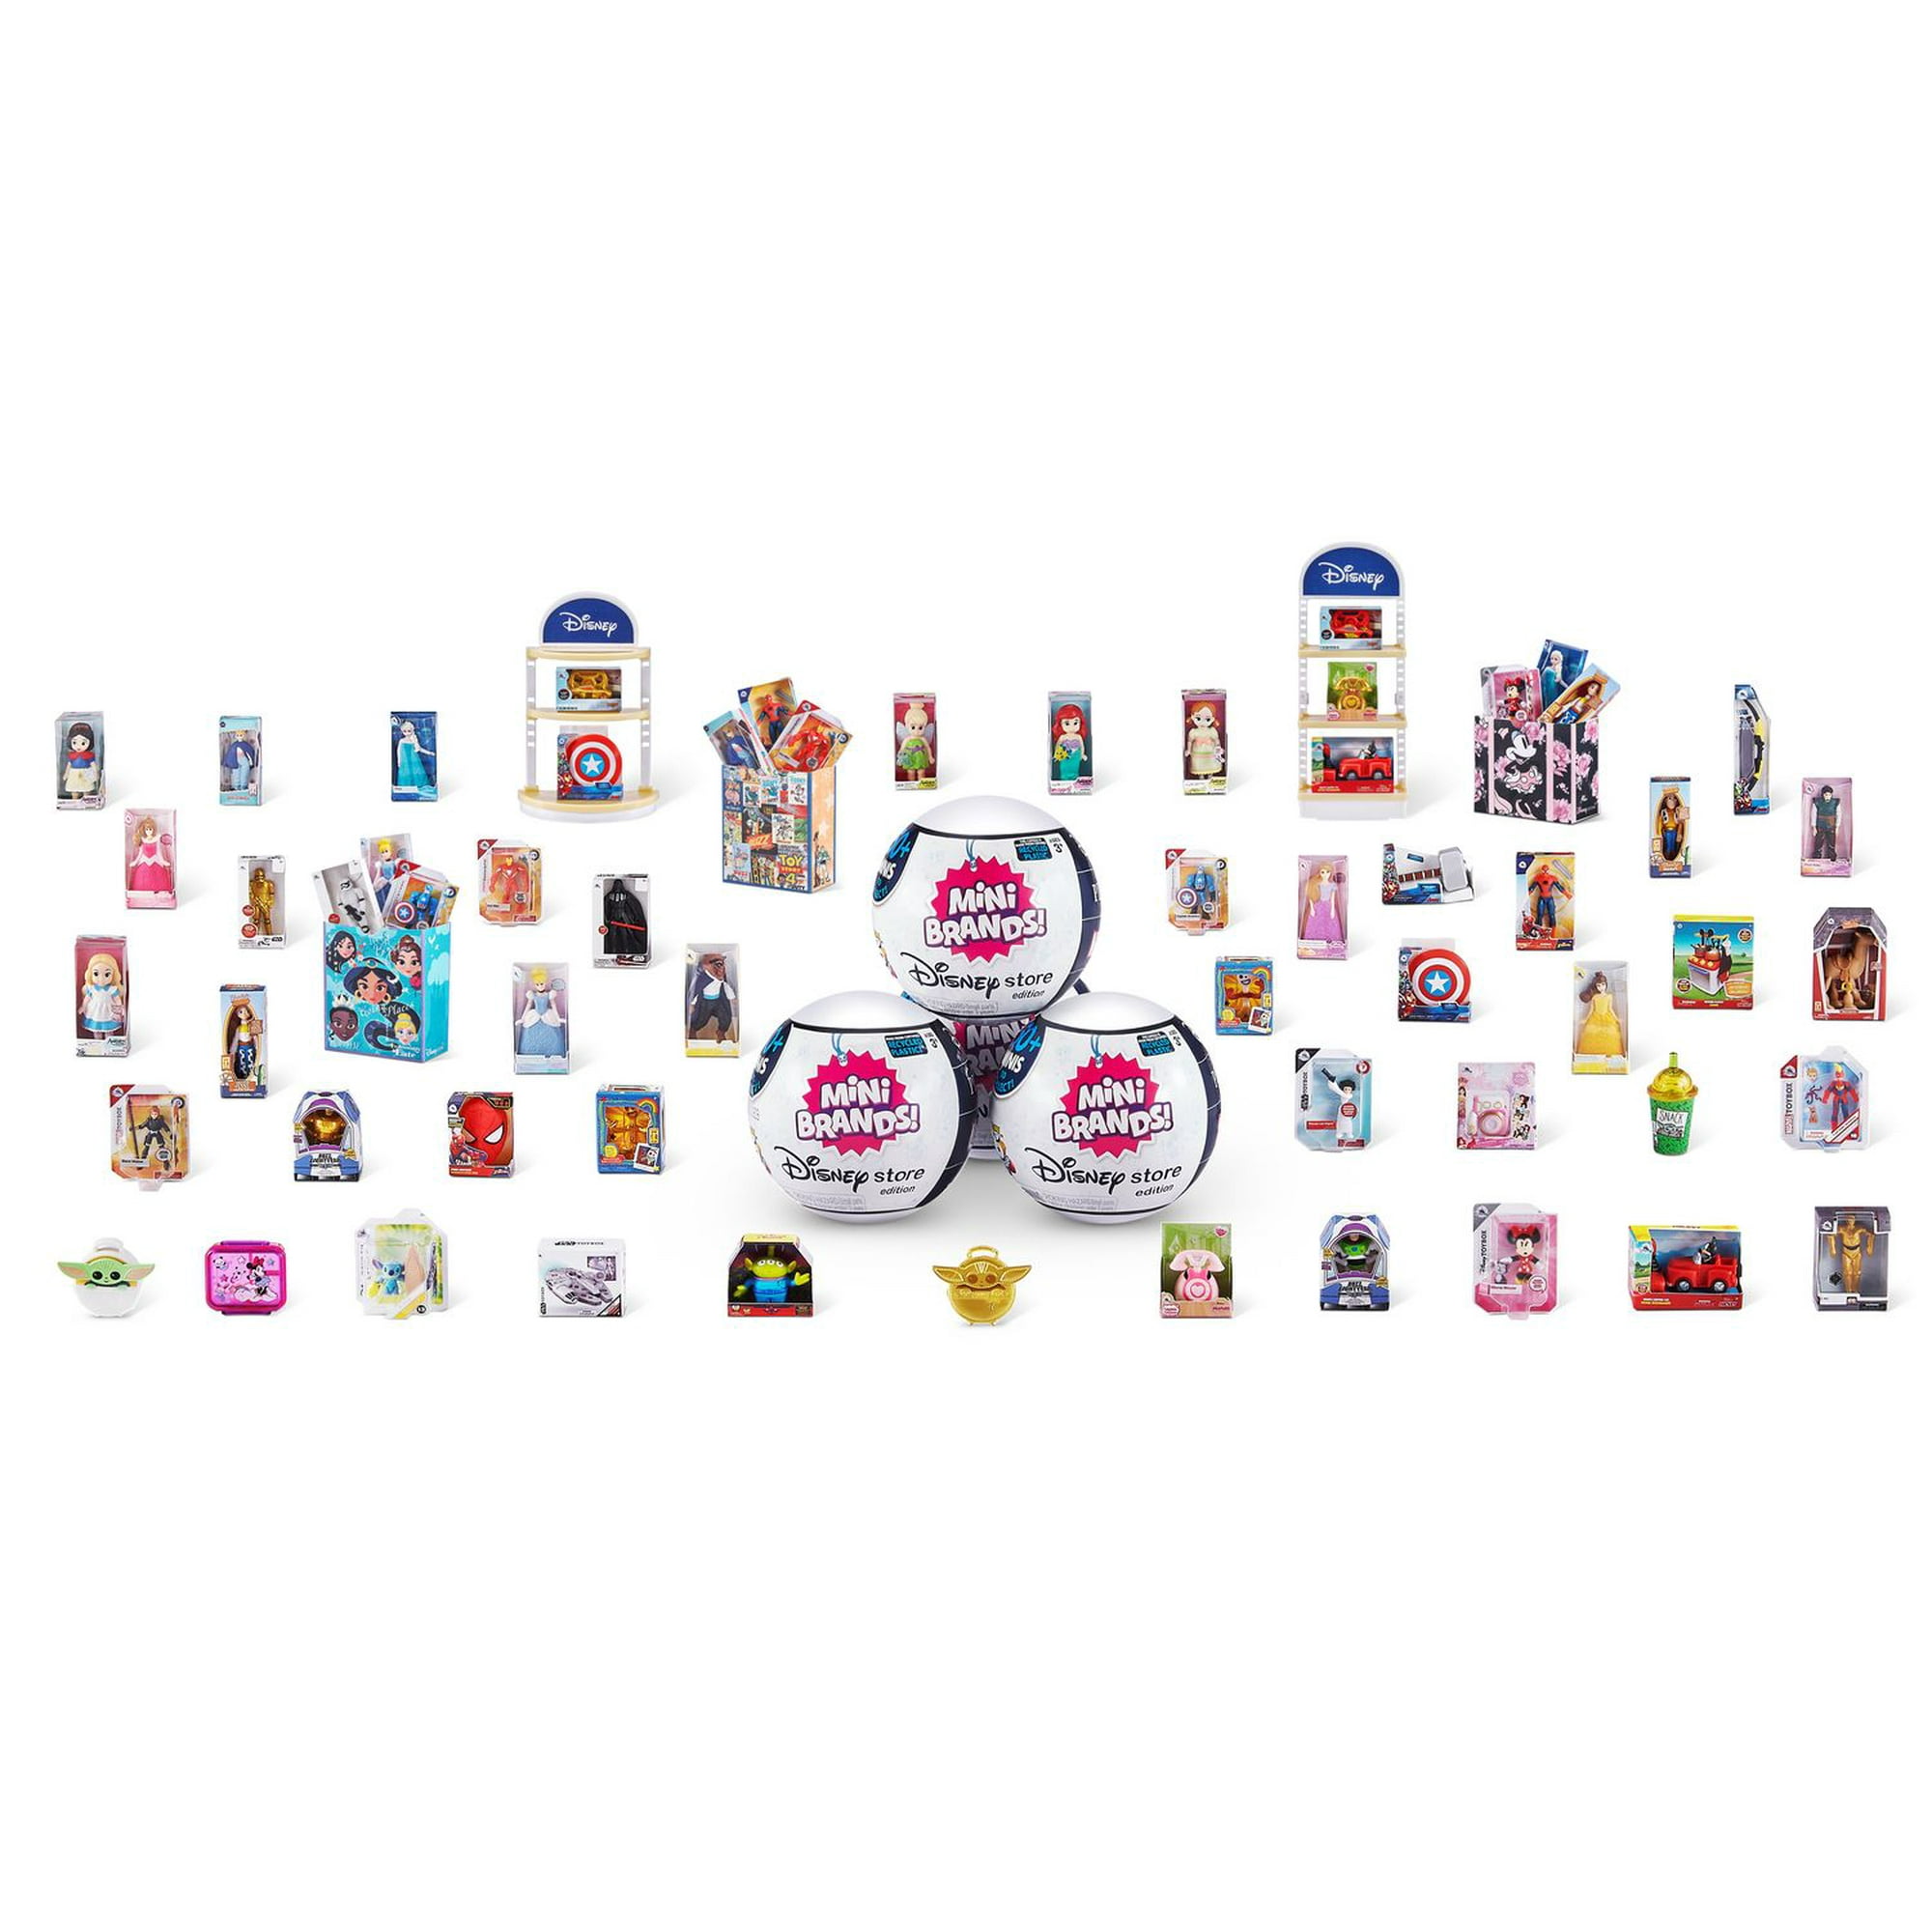 Zuru™ 5 Surprise Mini Brands Series 3 Real Miniature Brands